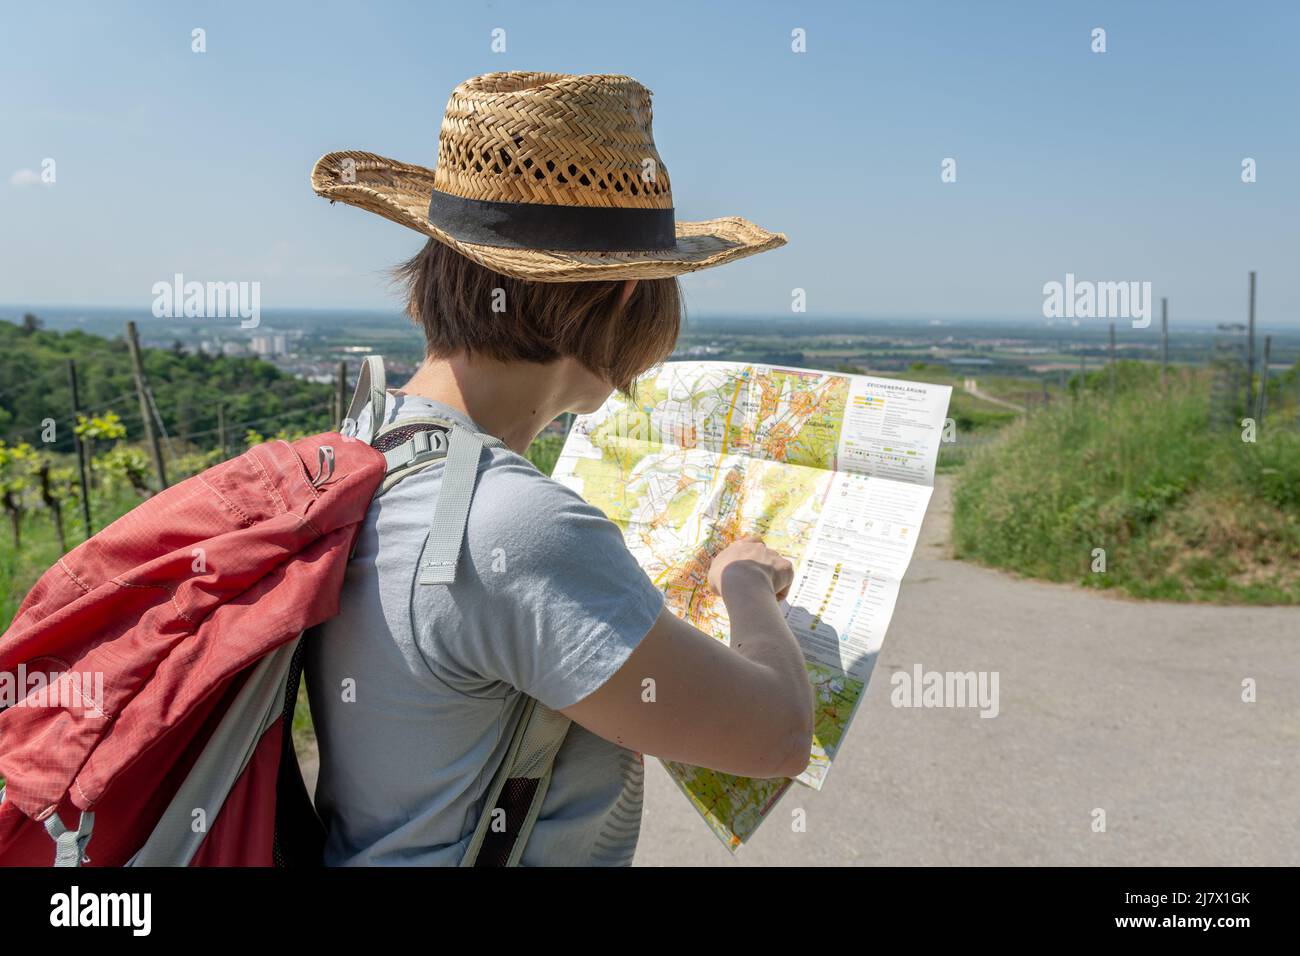 Femme de randonnée avec cheveux bruns, t-shirt gris, jeans, chapeau de  paille et sac à dos rouge debout à un carrefour de pays, regardant une  carte de randonnée Photo Stock - Alamy